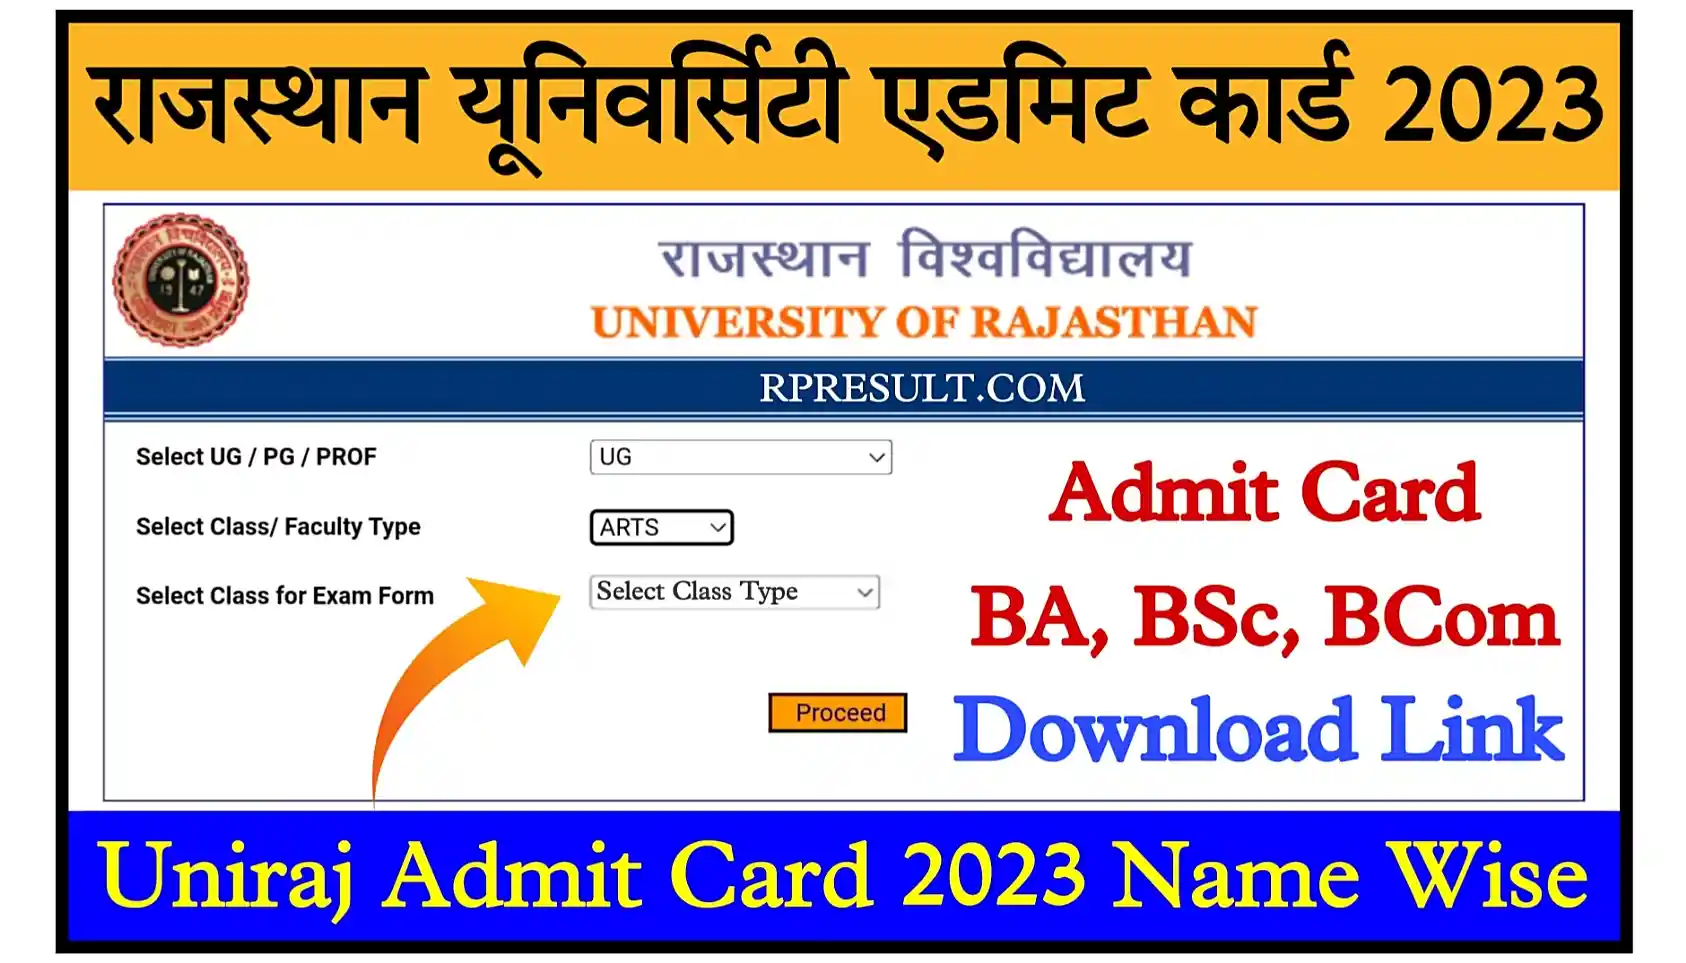 Rajasthan University Admit Card 2023 Download Link राजस्थान यूनिवर्सिटी BA, BSc, BCom के नए एडमिट कार्ड जारी, यहां से डाउनलोड करें